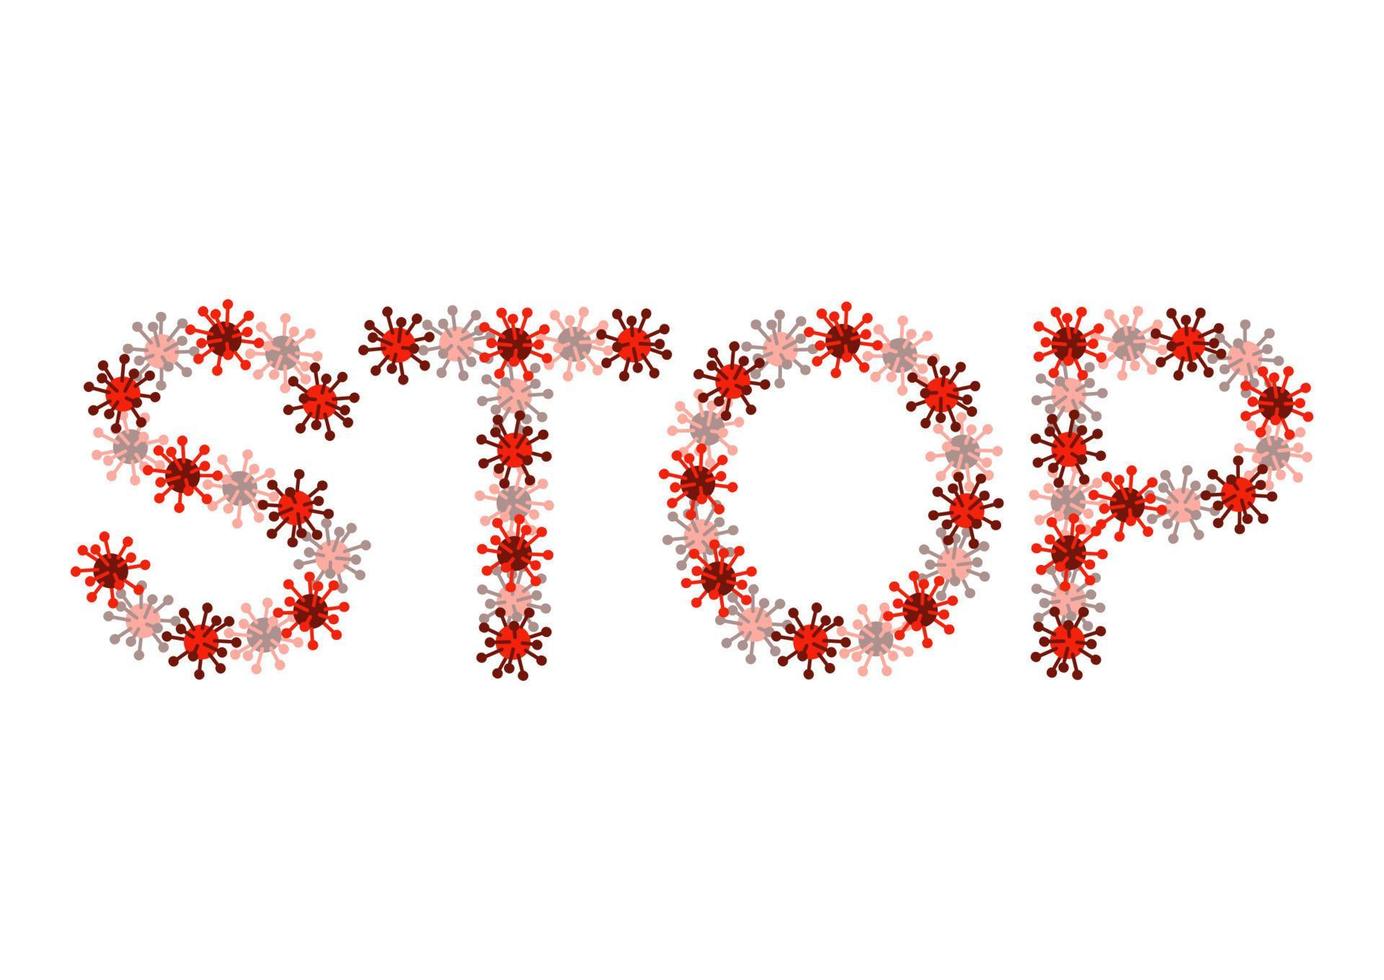 stop coronavirus covid-19 - woord opgemaakt uit virussen, belettering vector